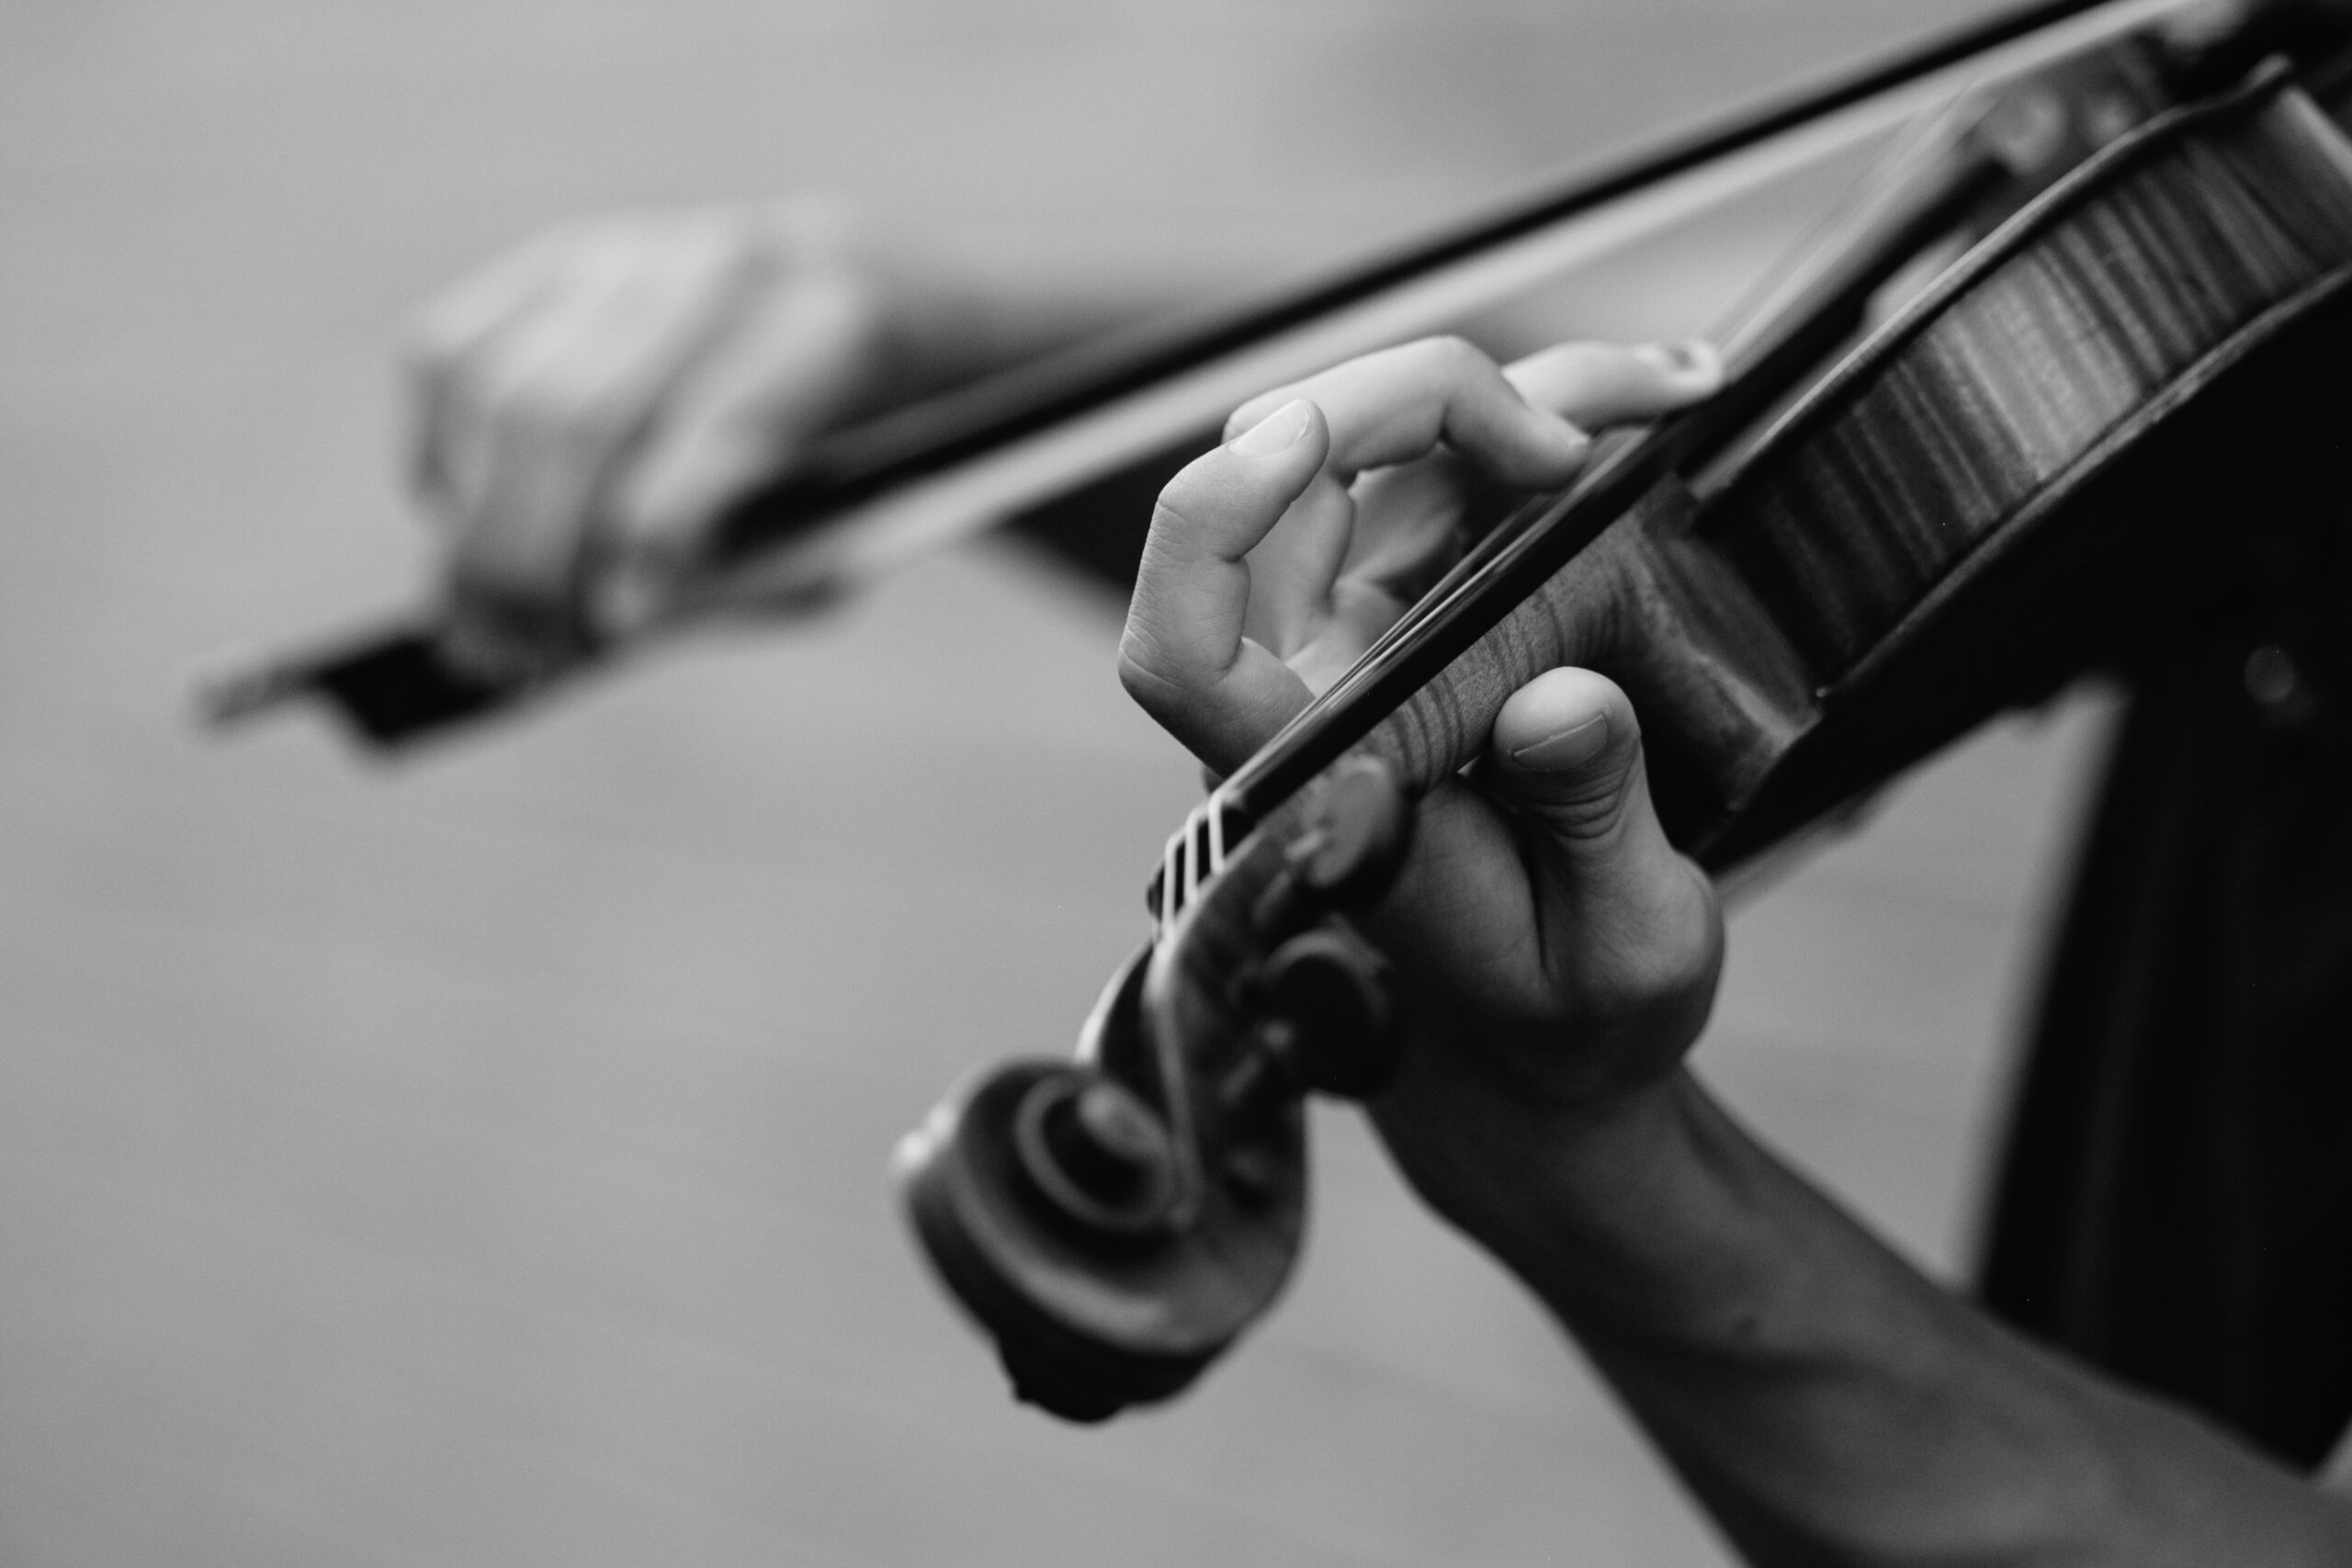 person playing violin by Joel Wyncott on Unsplash